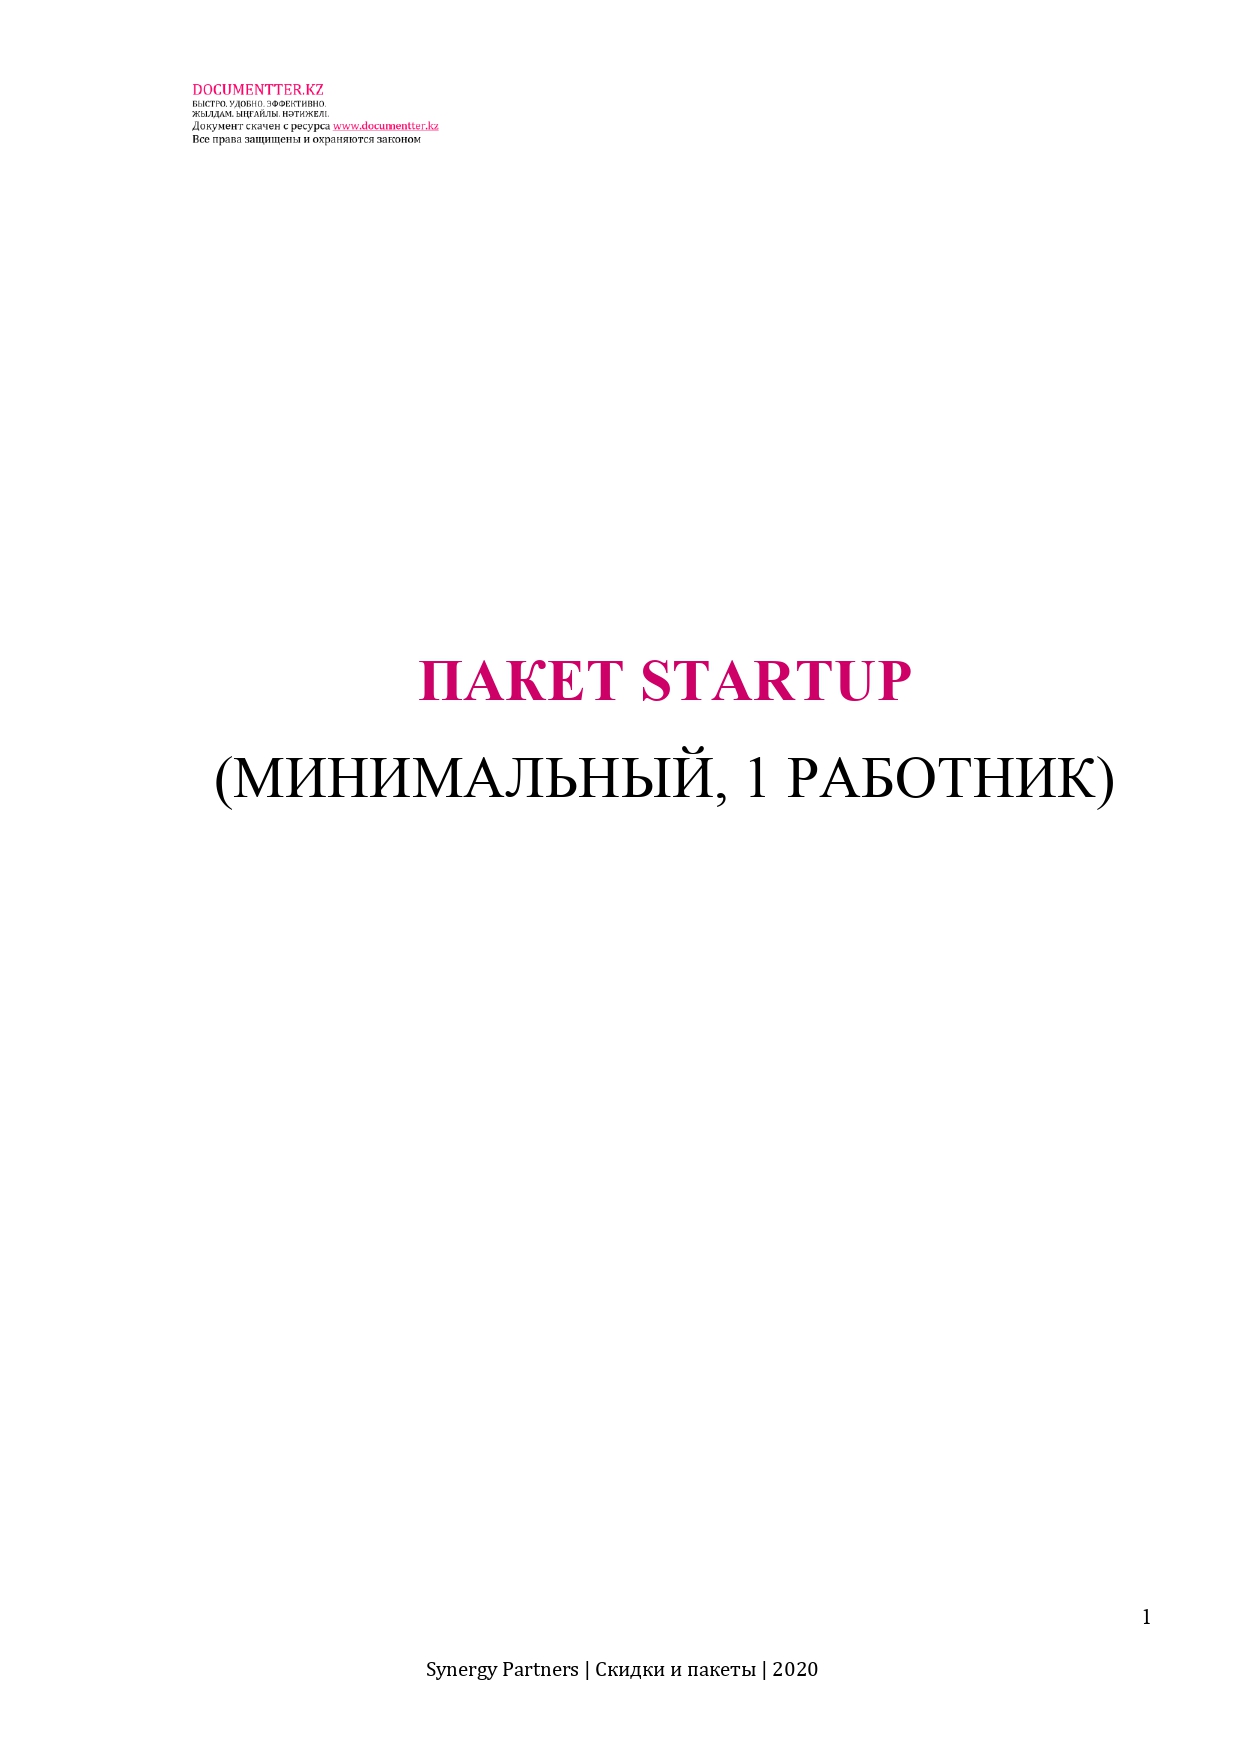 Пакет Startup (минимальный 1 работник) | documentterkz.com в Казахстане